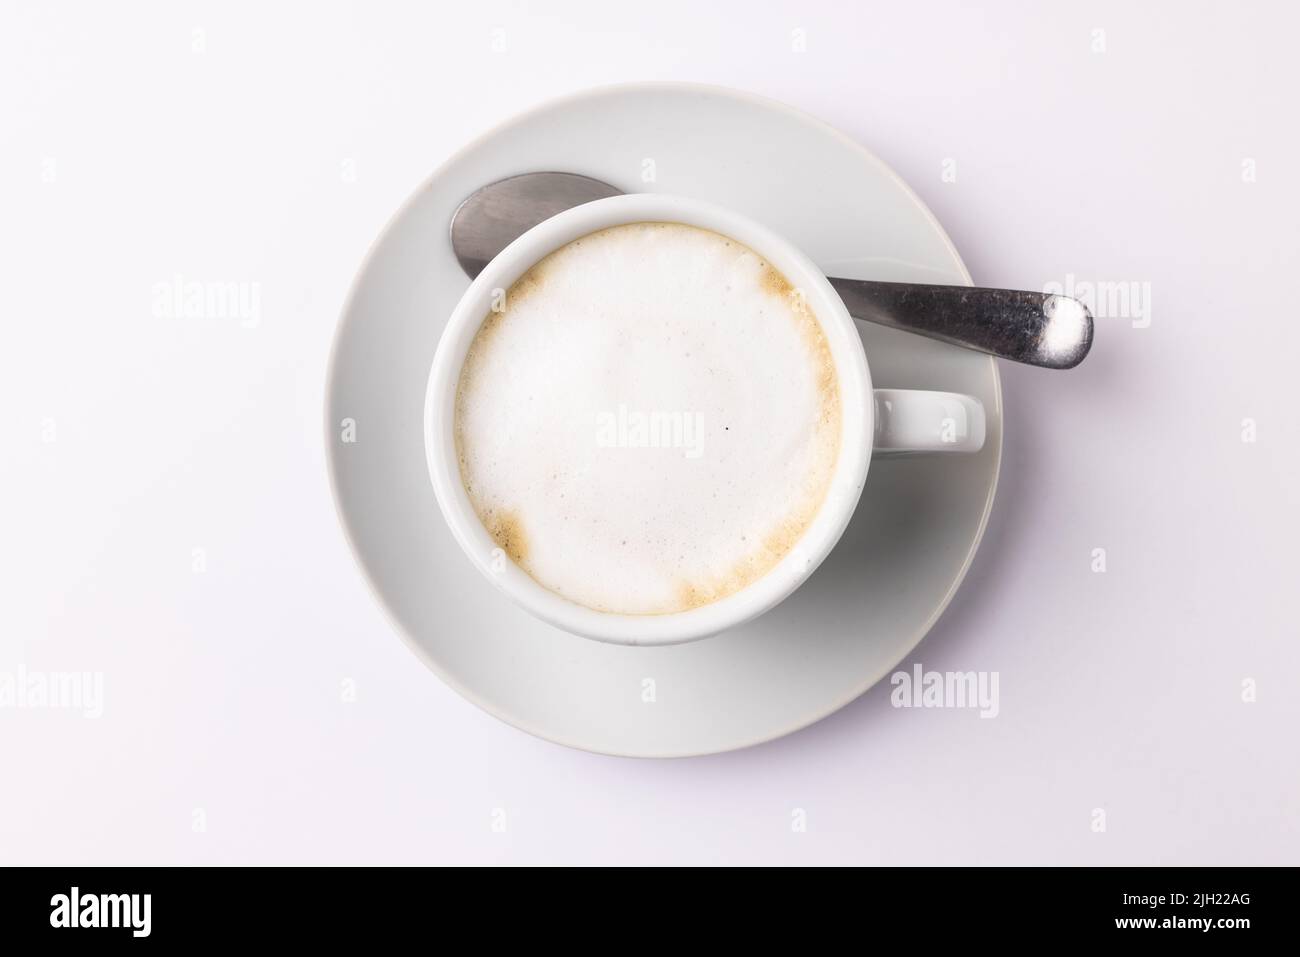 Immagine di una tazza di caffè bianca con latte su sfondo bianco Foto Stock